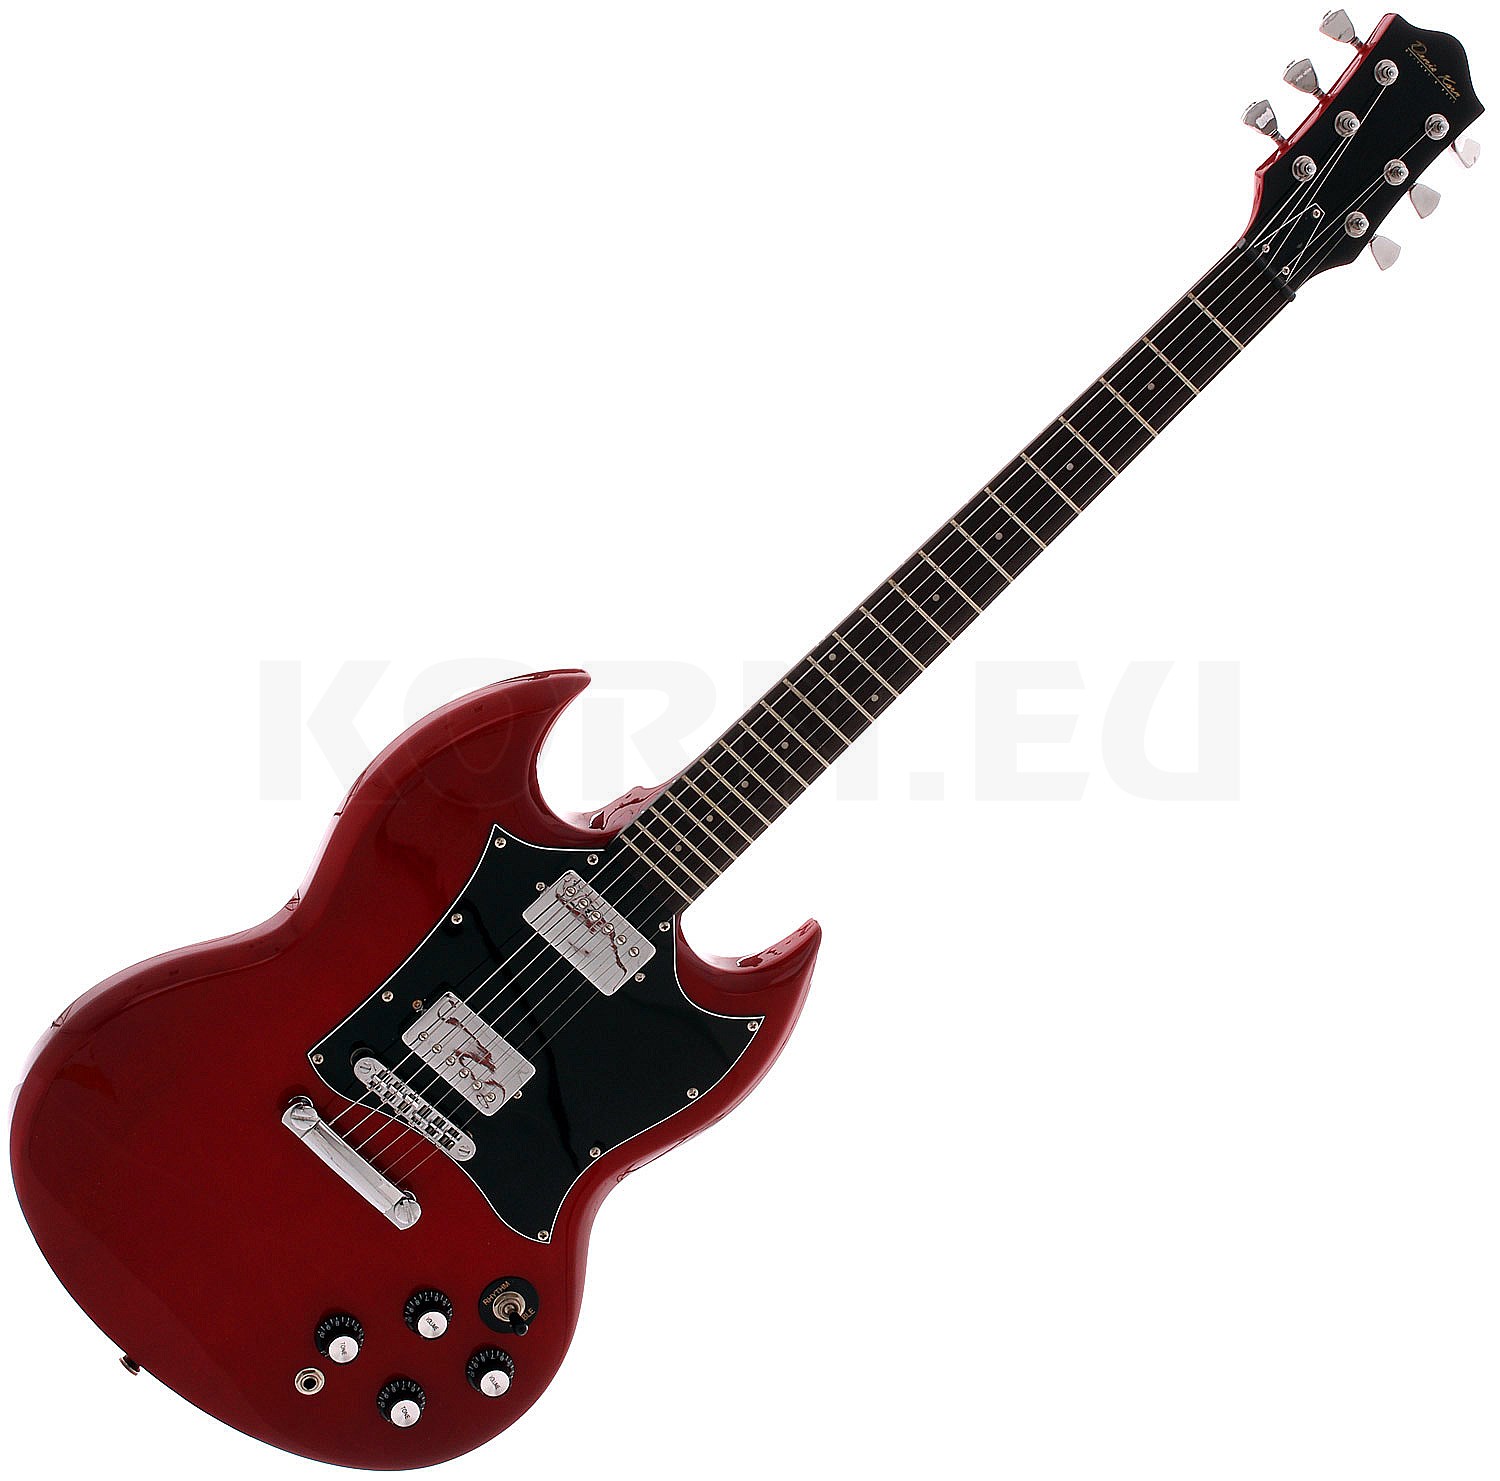 Denis Korn E Gitarre Jailbreak Cherry Red Music Store